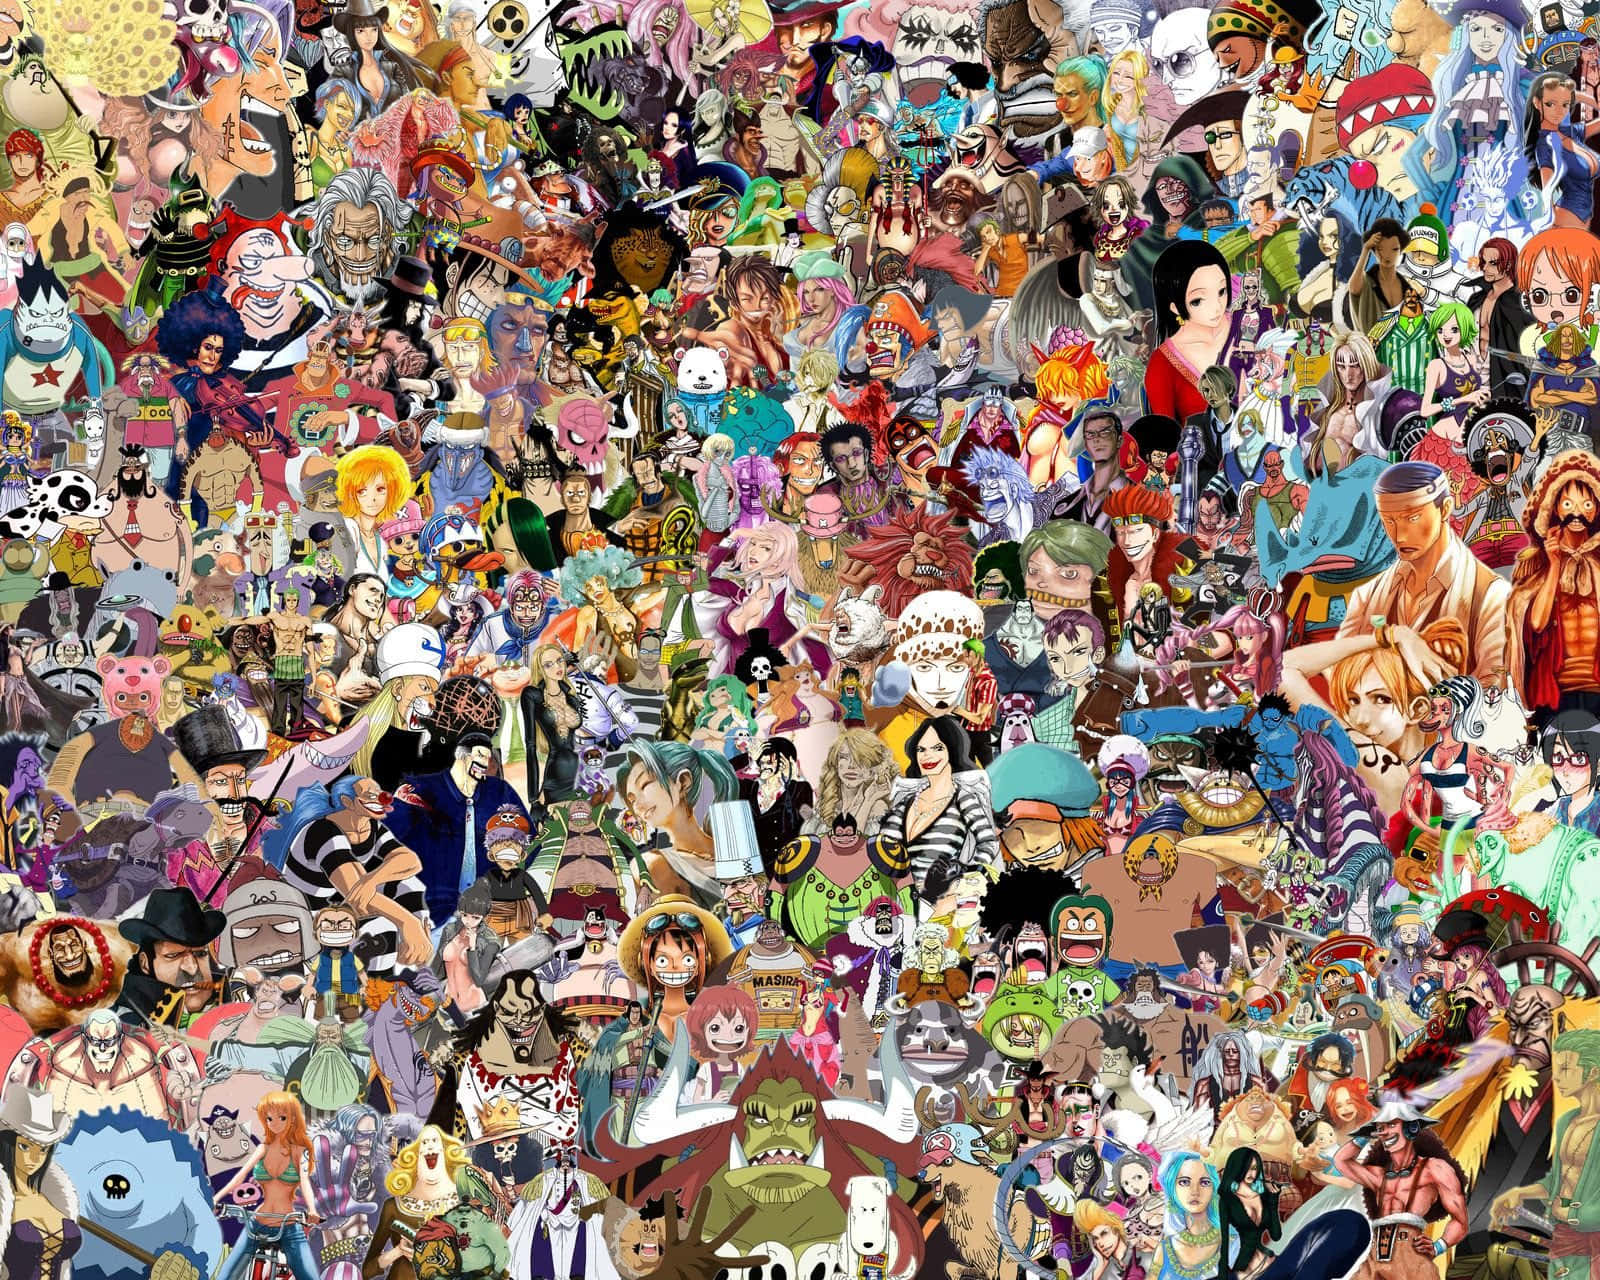 100+] Nice Anime Wallpapers | Wallpapers.com